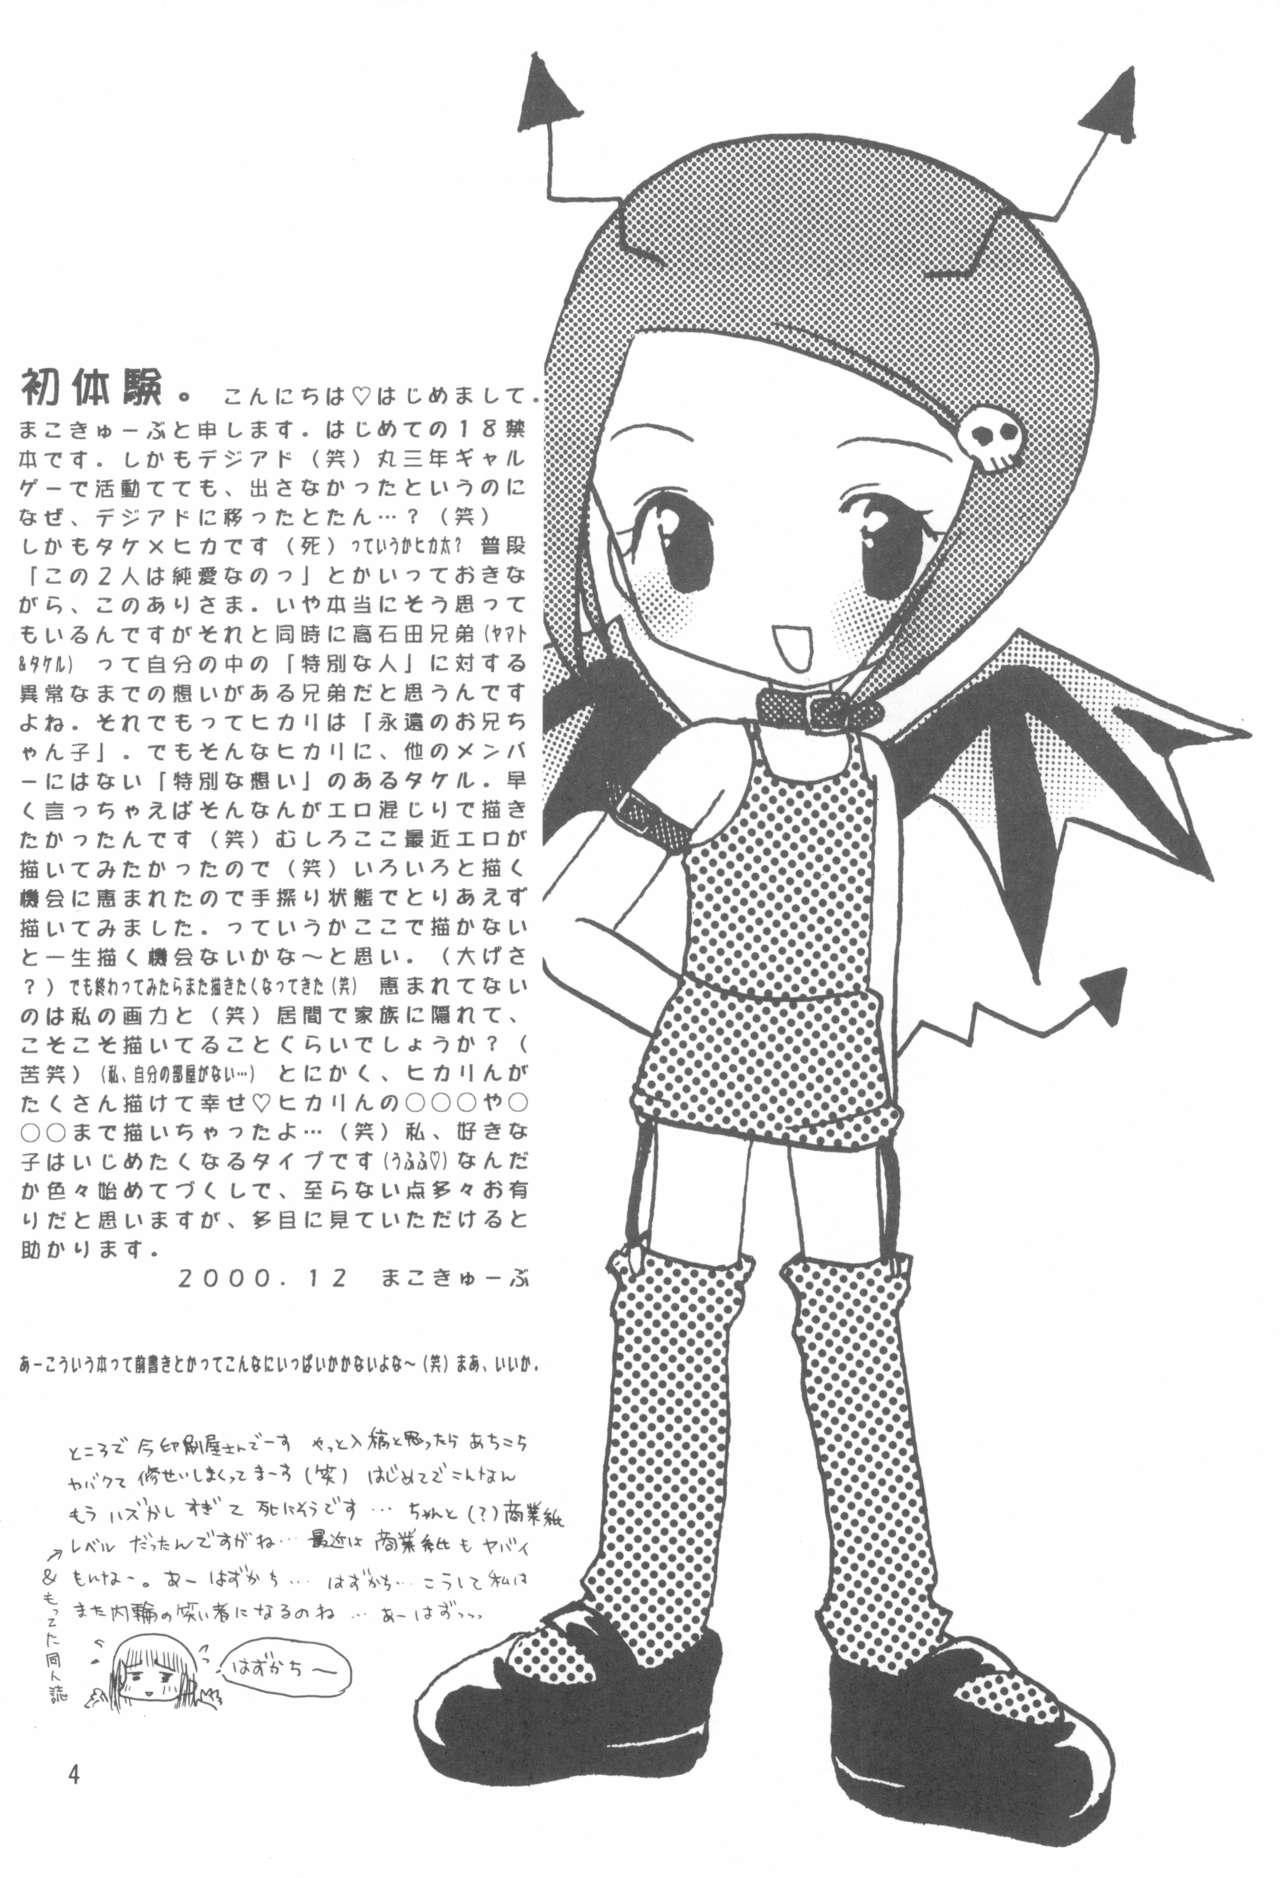 Oriental Hikari Mania - Digimon adventure Pasivo - Page 3